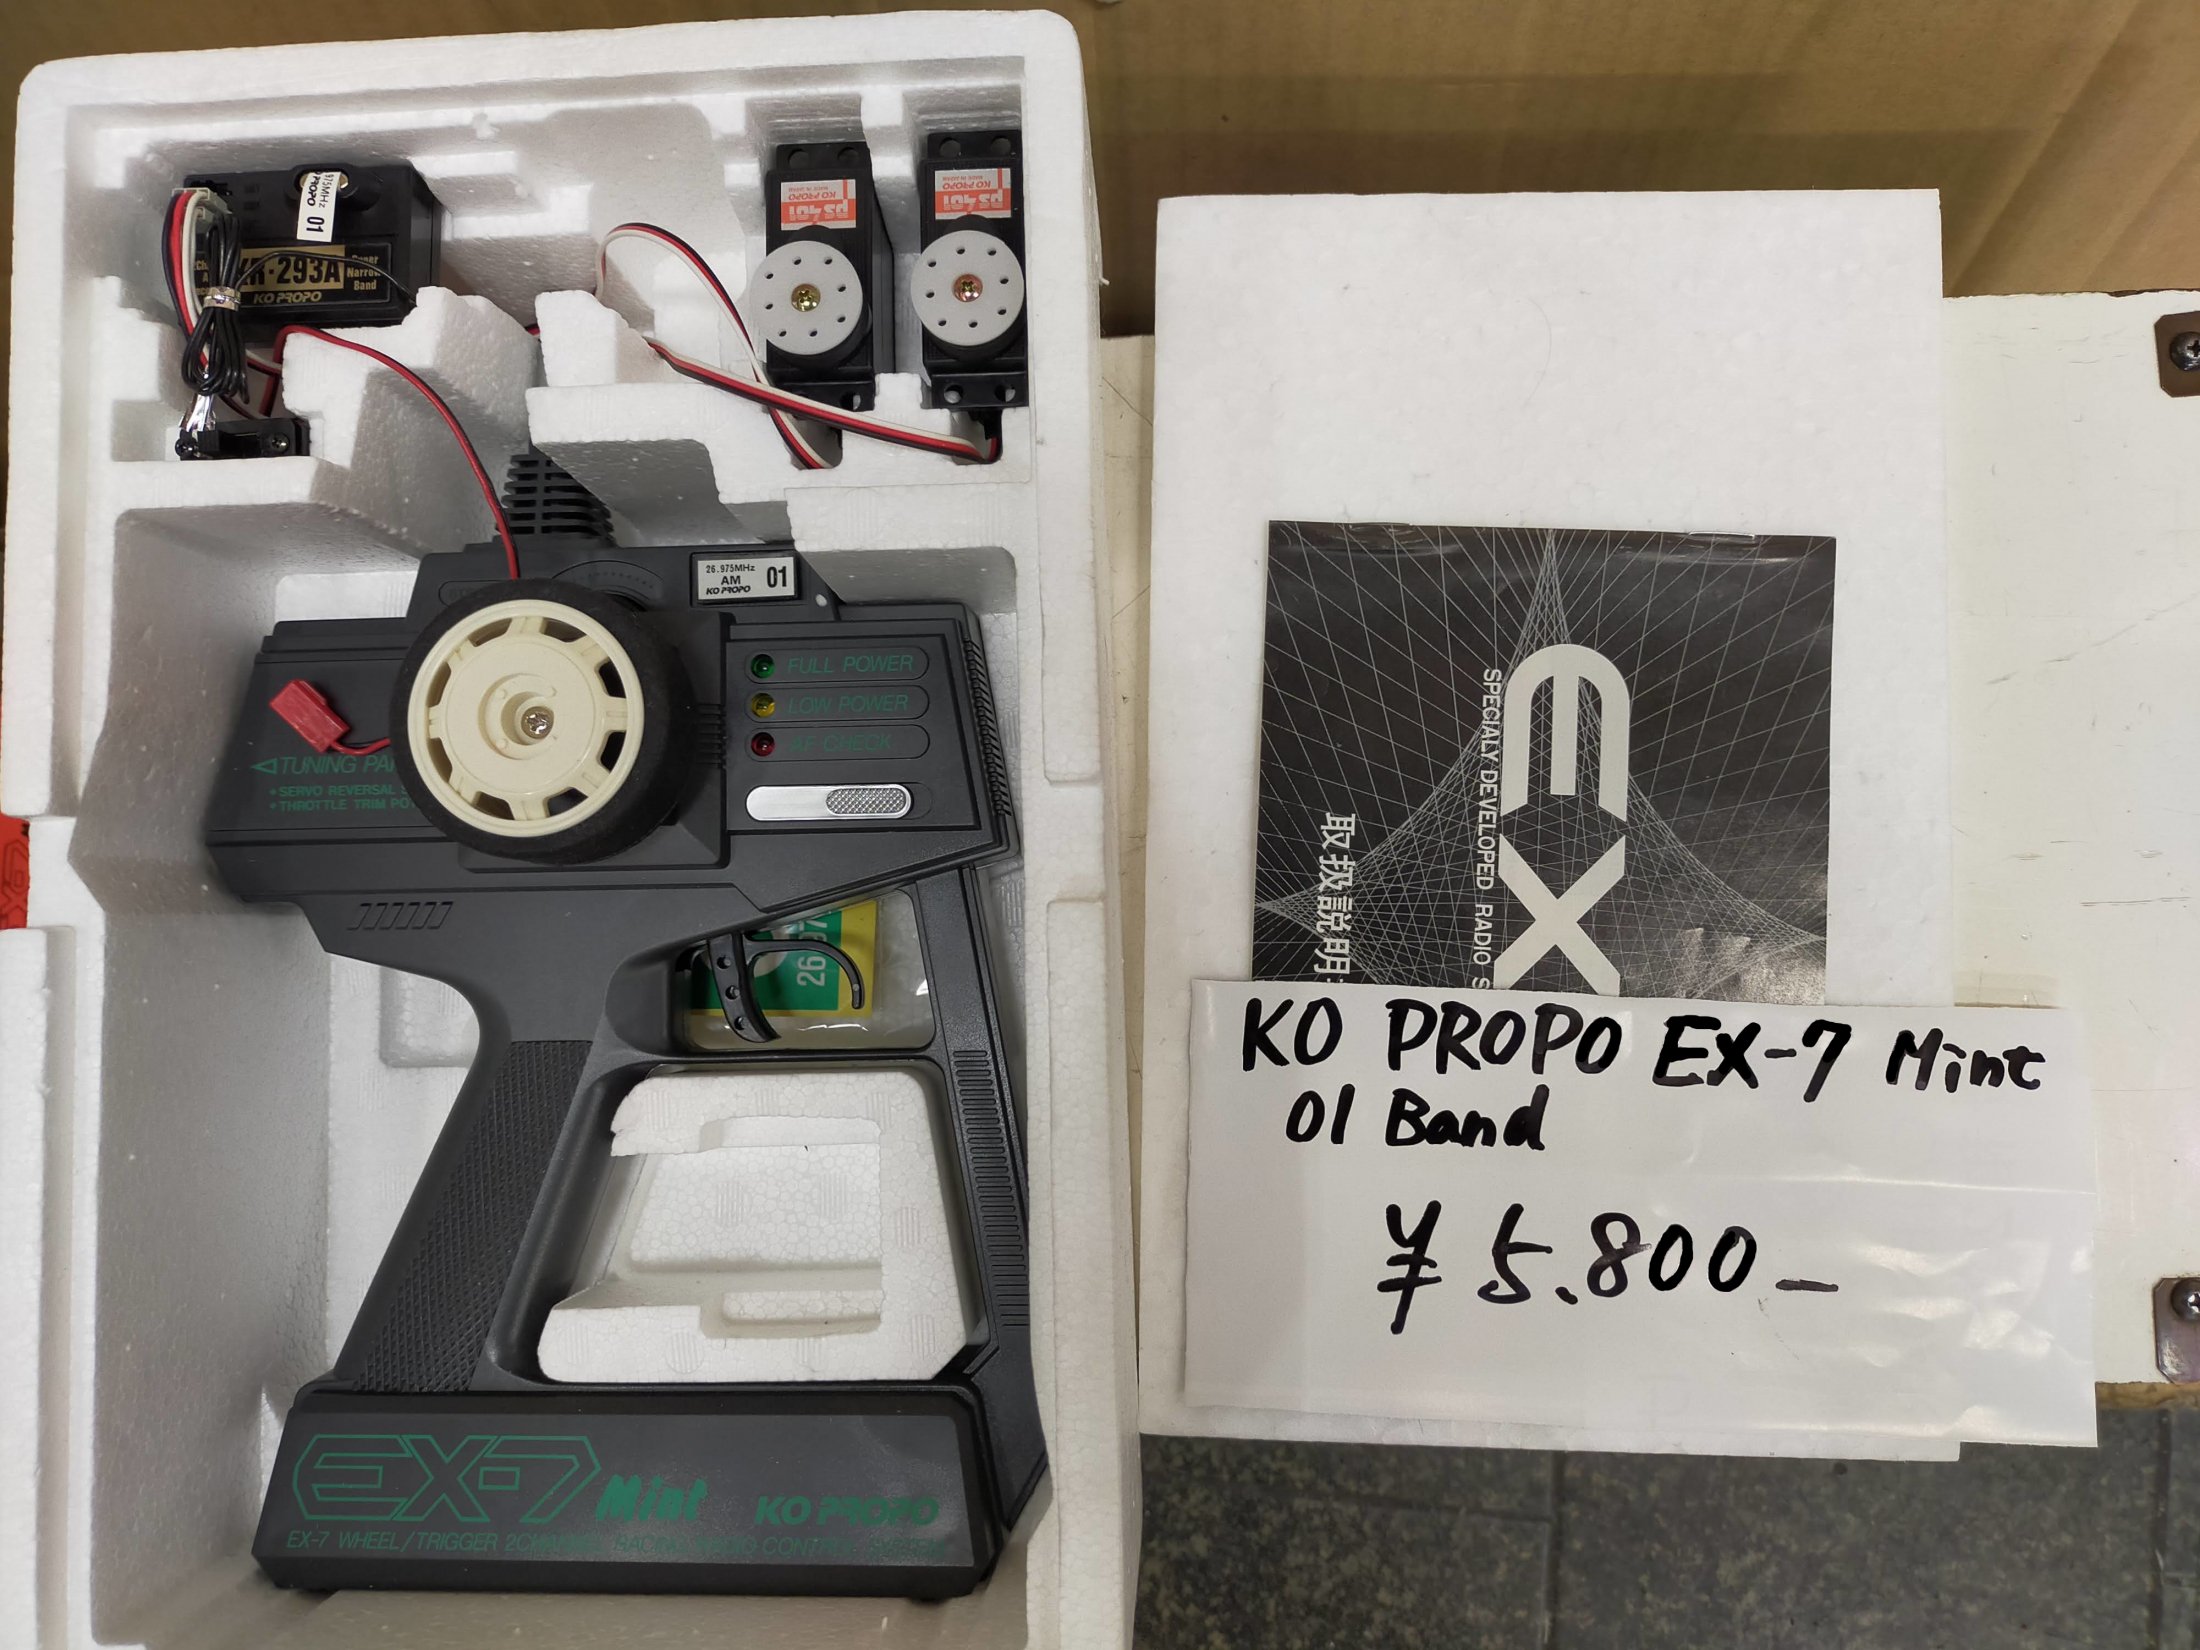 KO PROPO EX-7 Mint 01Band - ラジコン販売 柳屋模型店 やなぎや